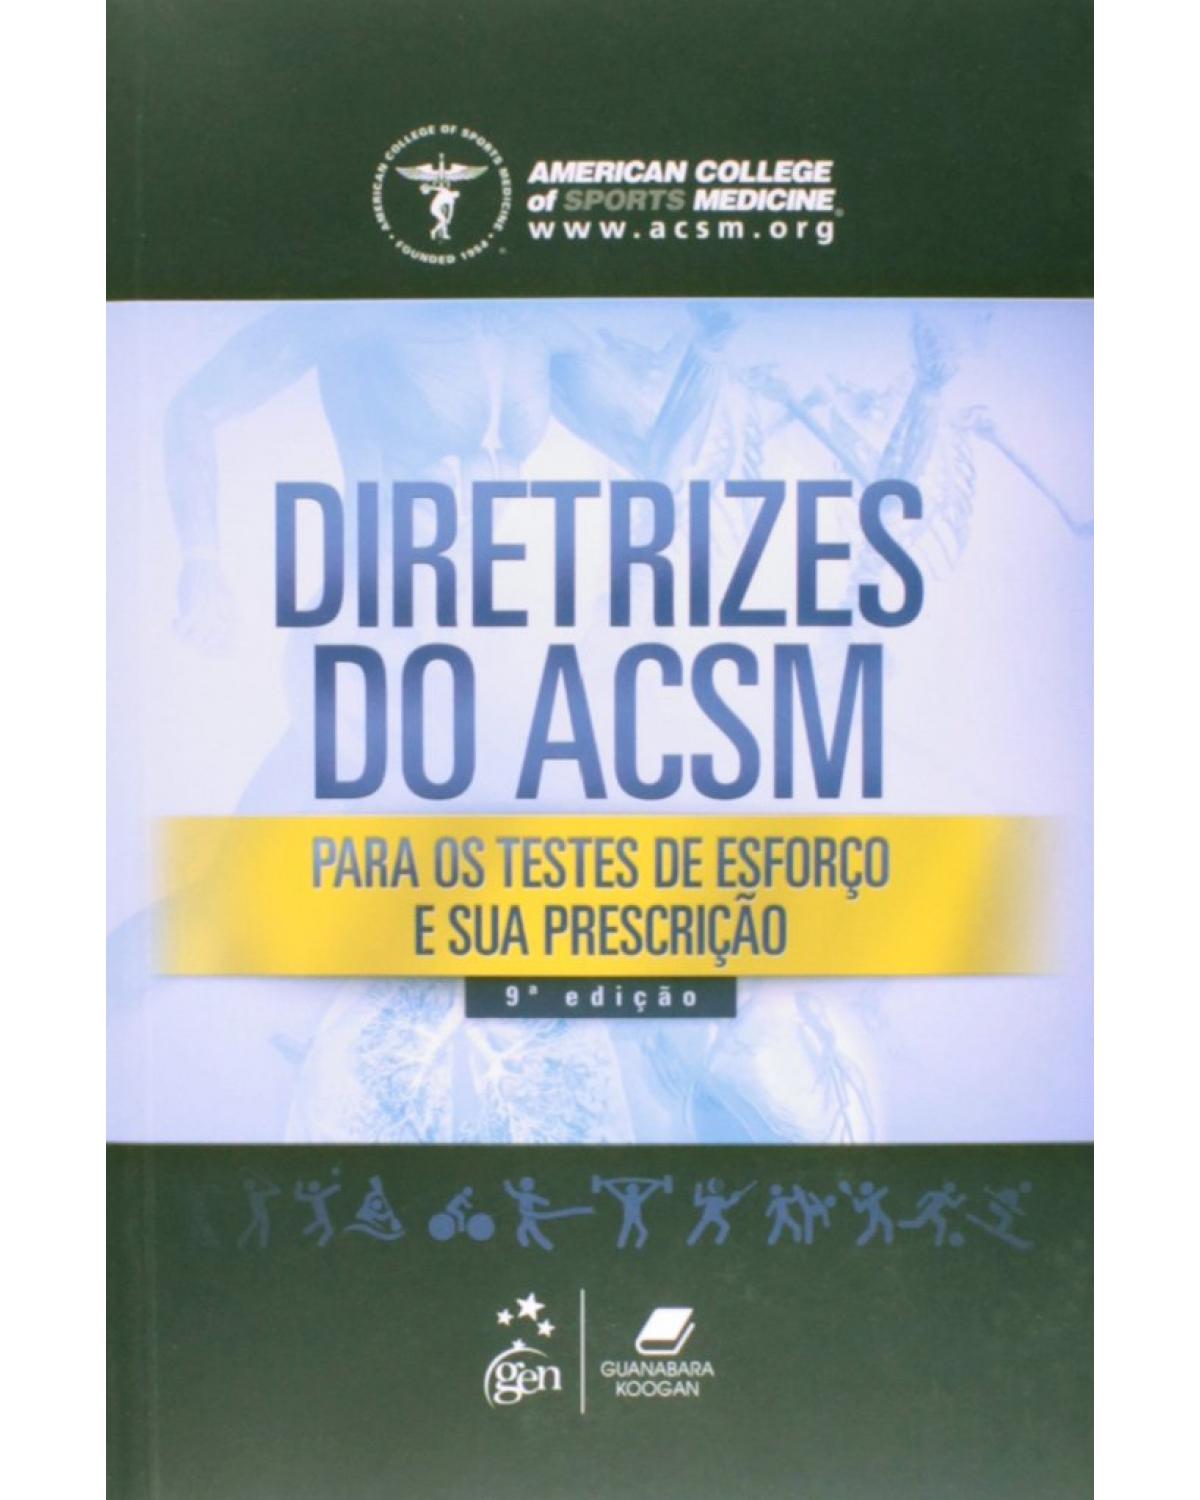 Diretrizes do ACSM - Para os testes de esforço e sua prescrição - 9ª Edição | 2014